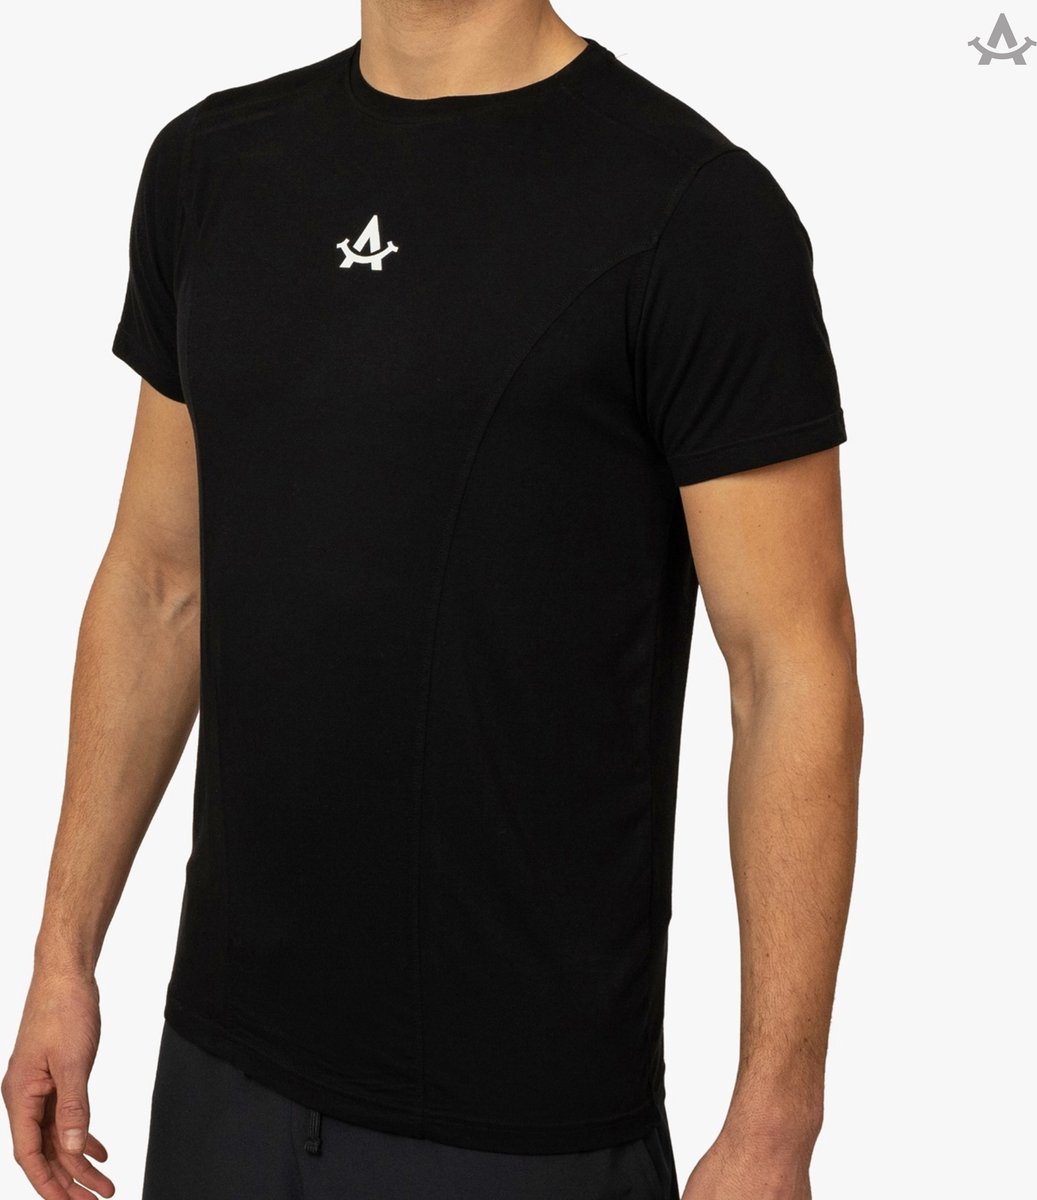 Sportshirt - 100% Duurzaam - Zwart - Handgemaakt in Portugal - Heren - Extra Lang - Fitness shirt mannen - Padel - Hardlopen - APM - M